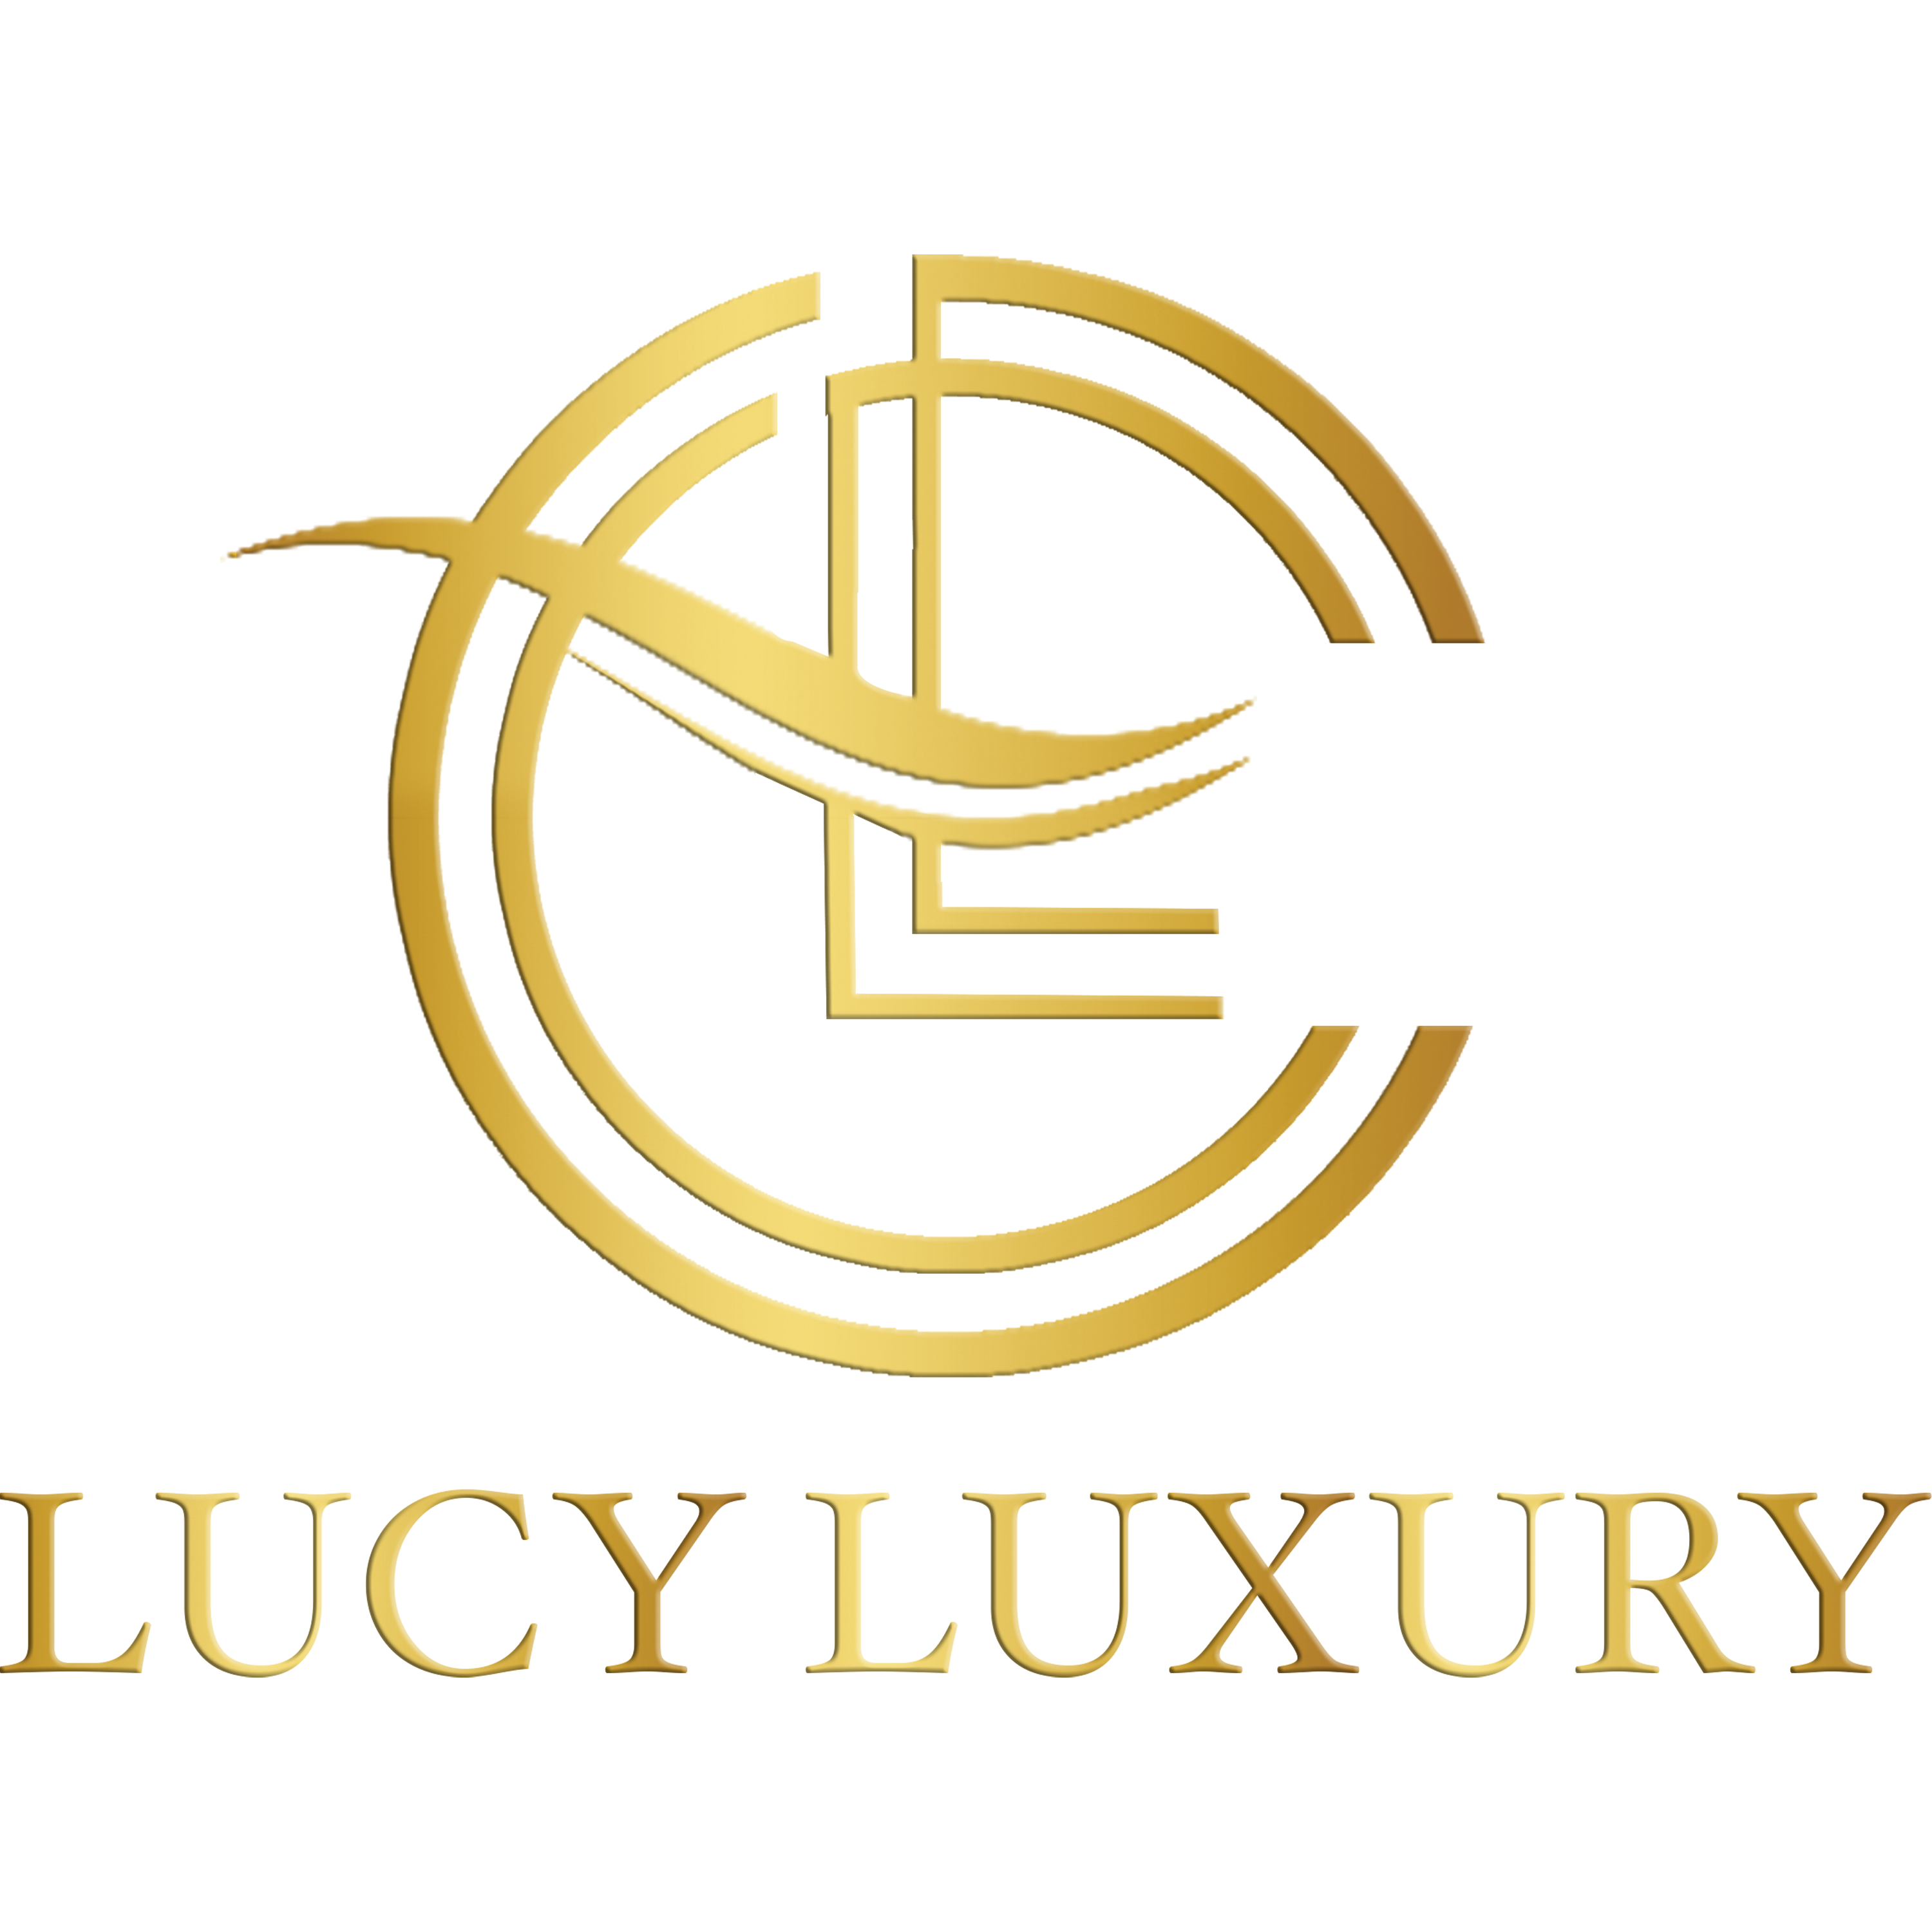 Lucy Luxury